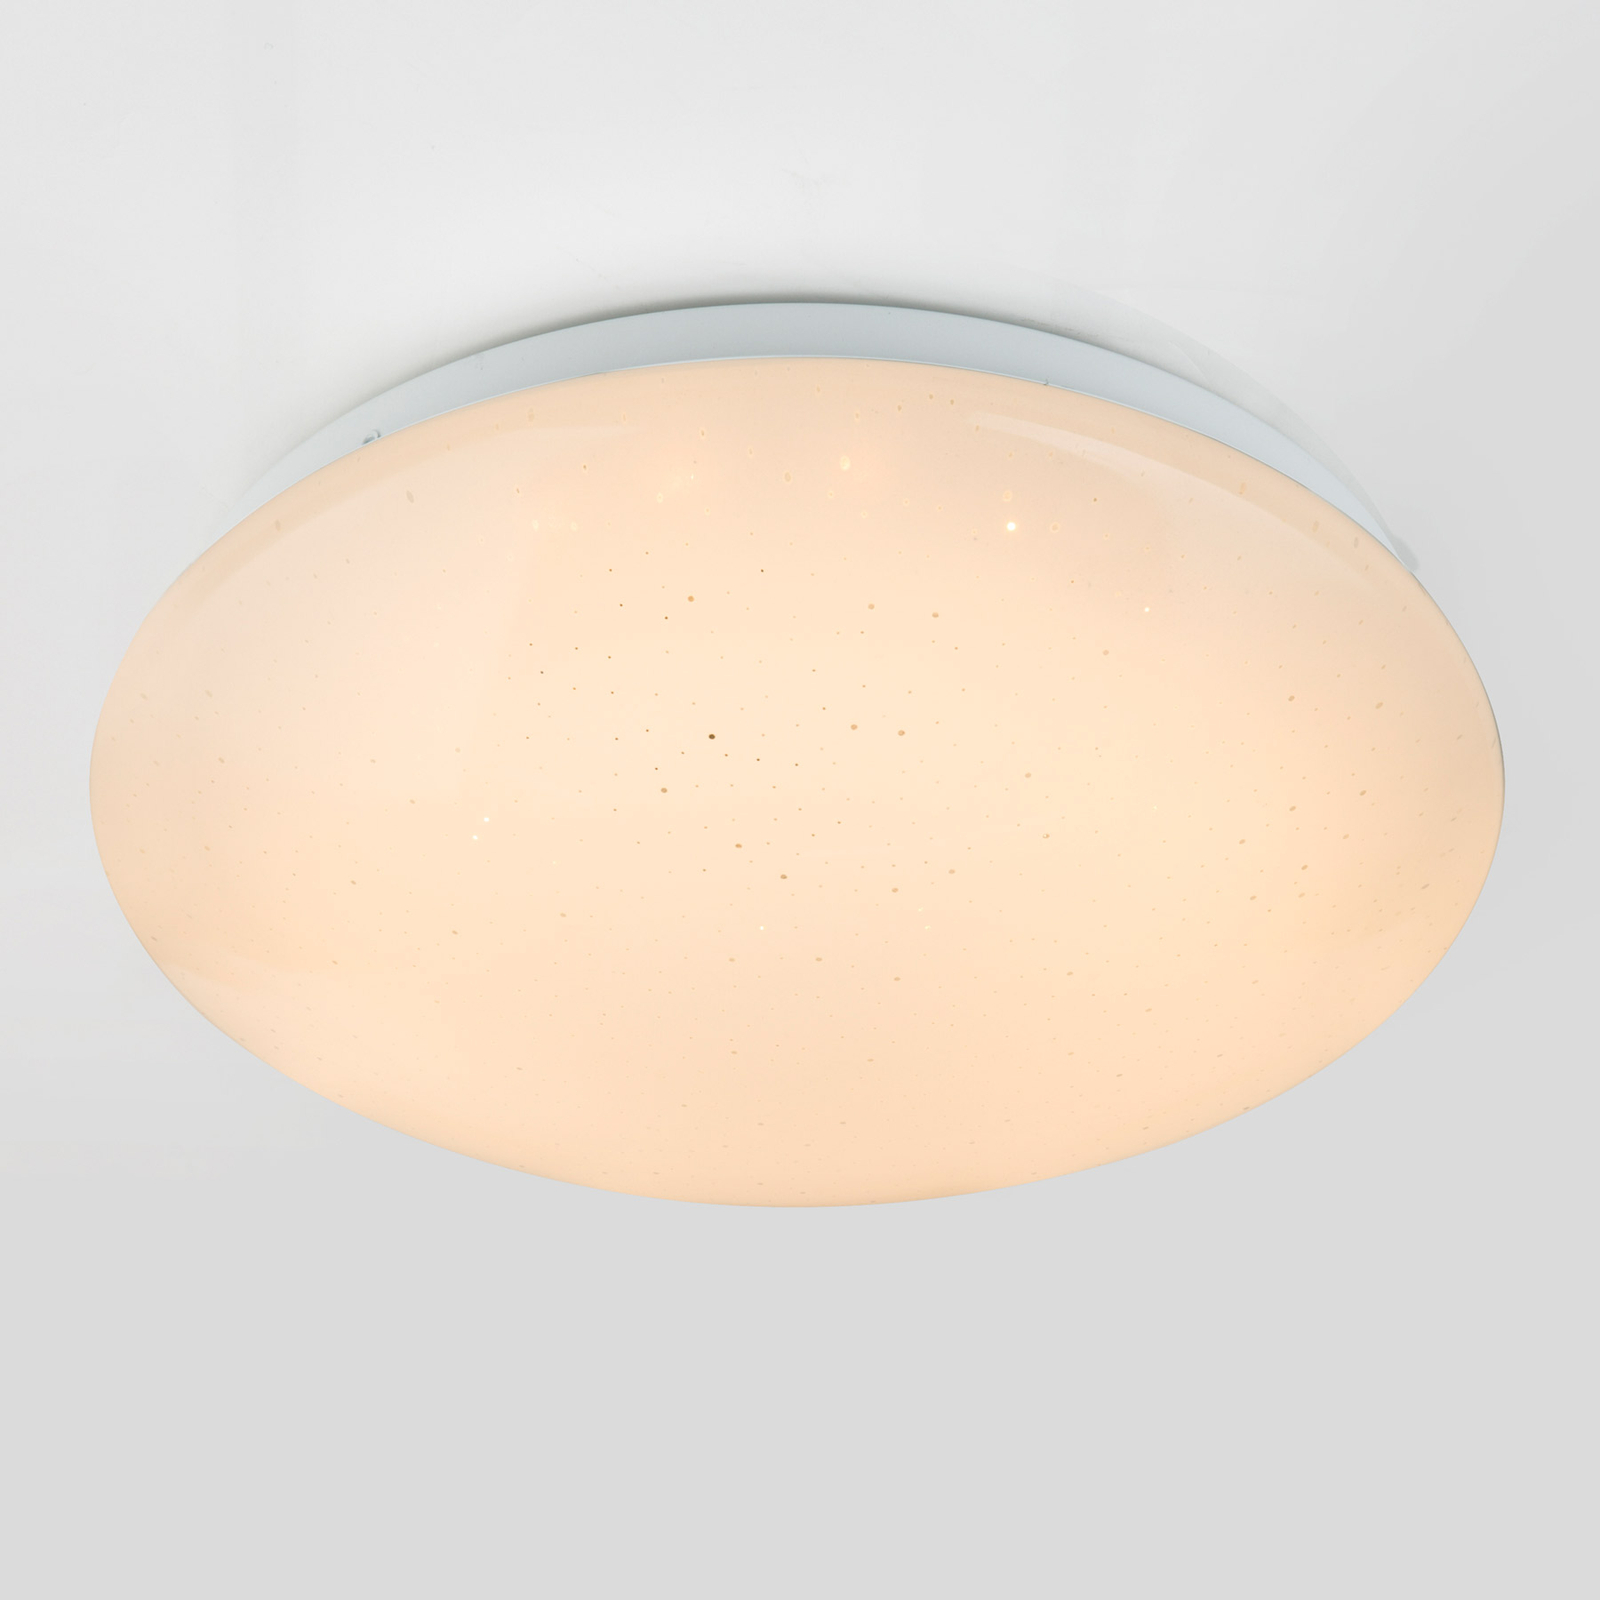 Lampa sufitowa LED Atreju I, RGBW, Ø 29 cm